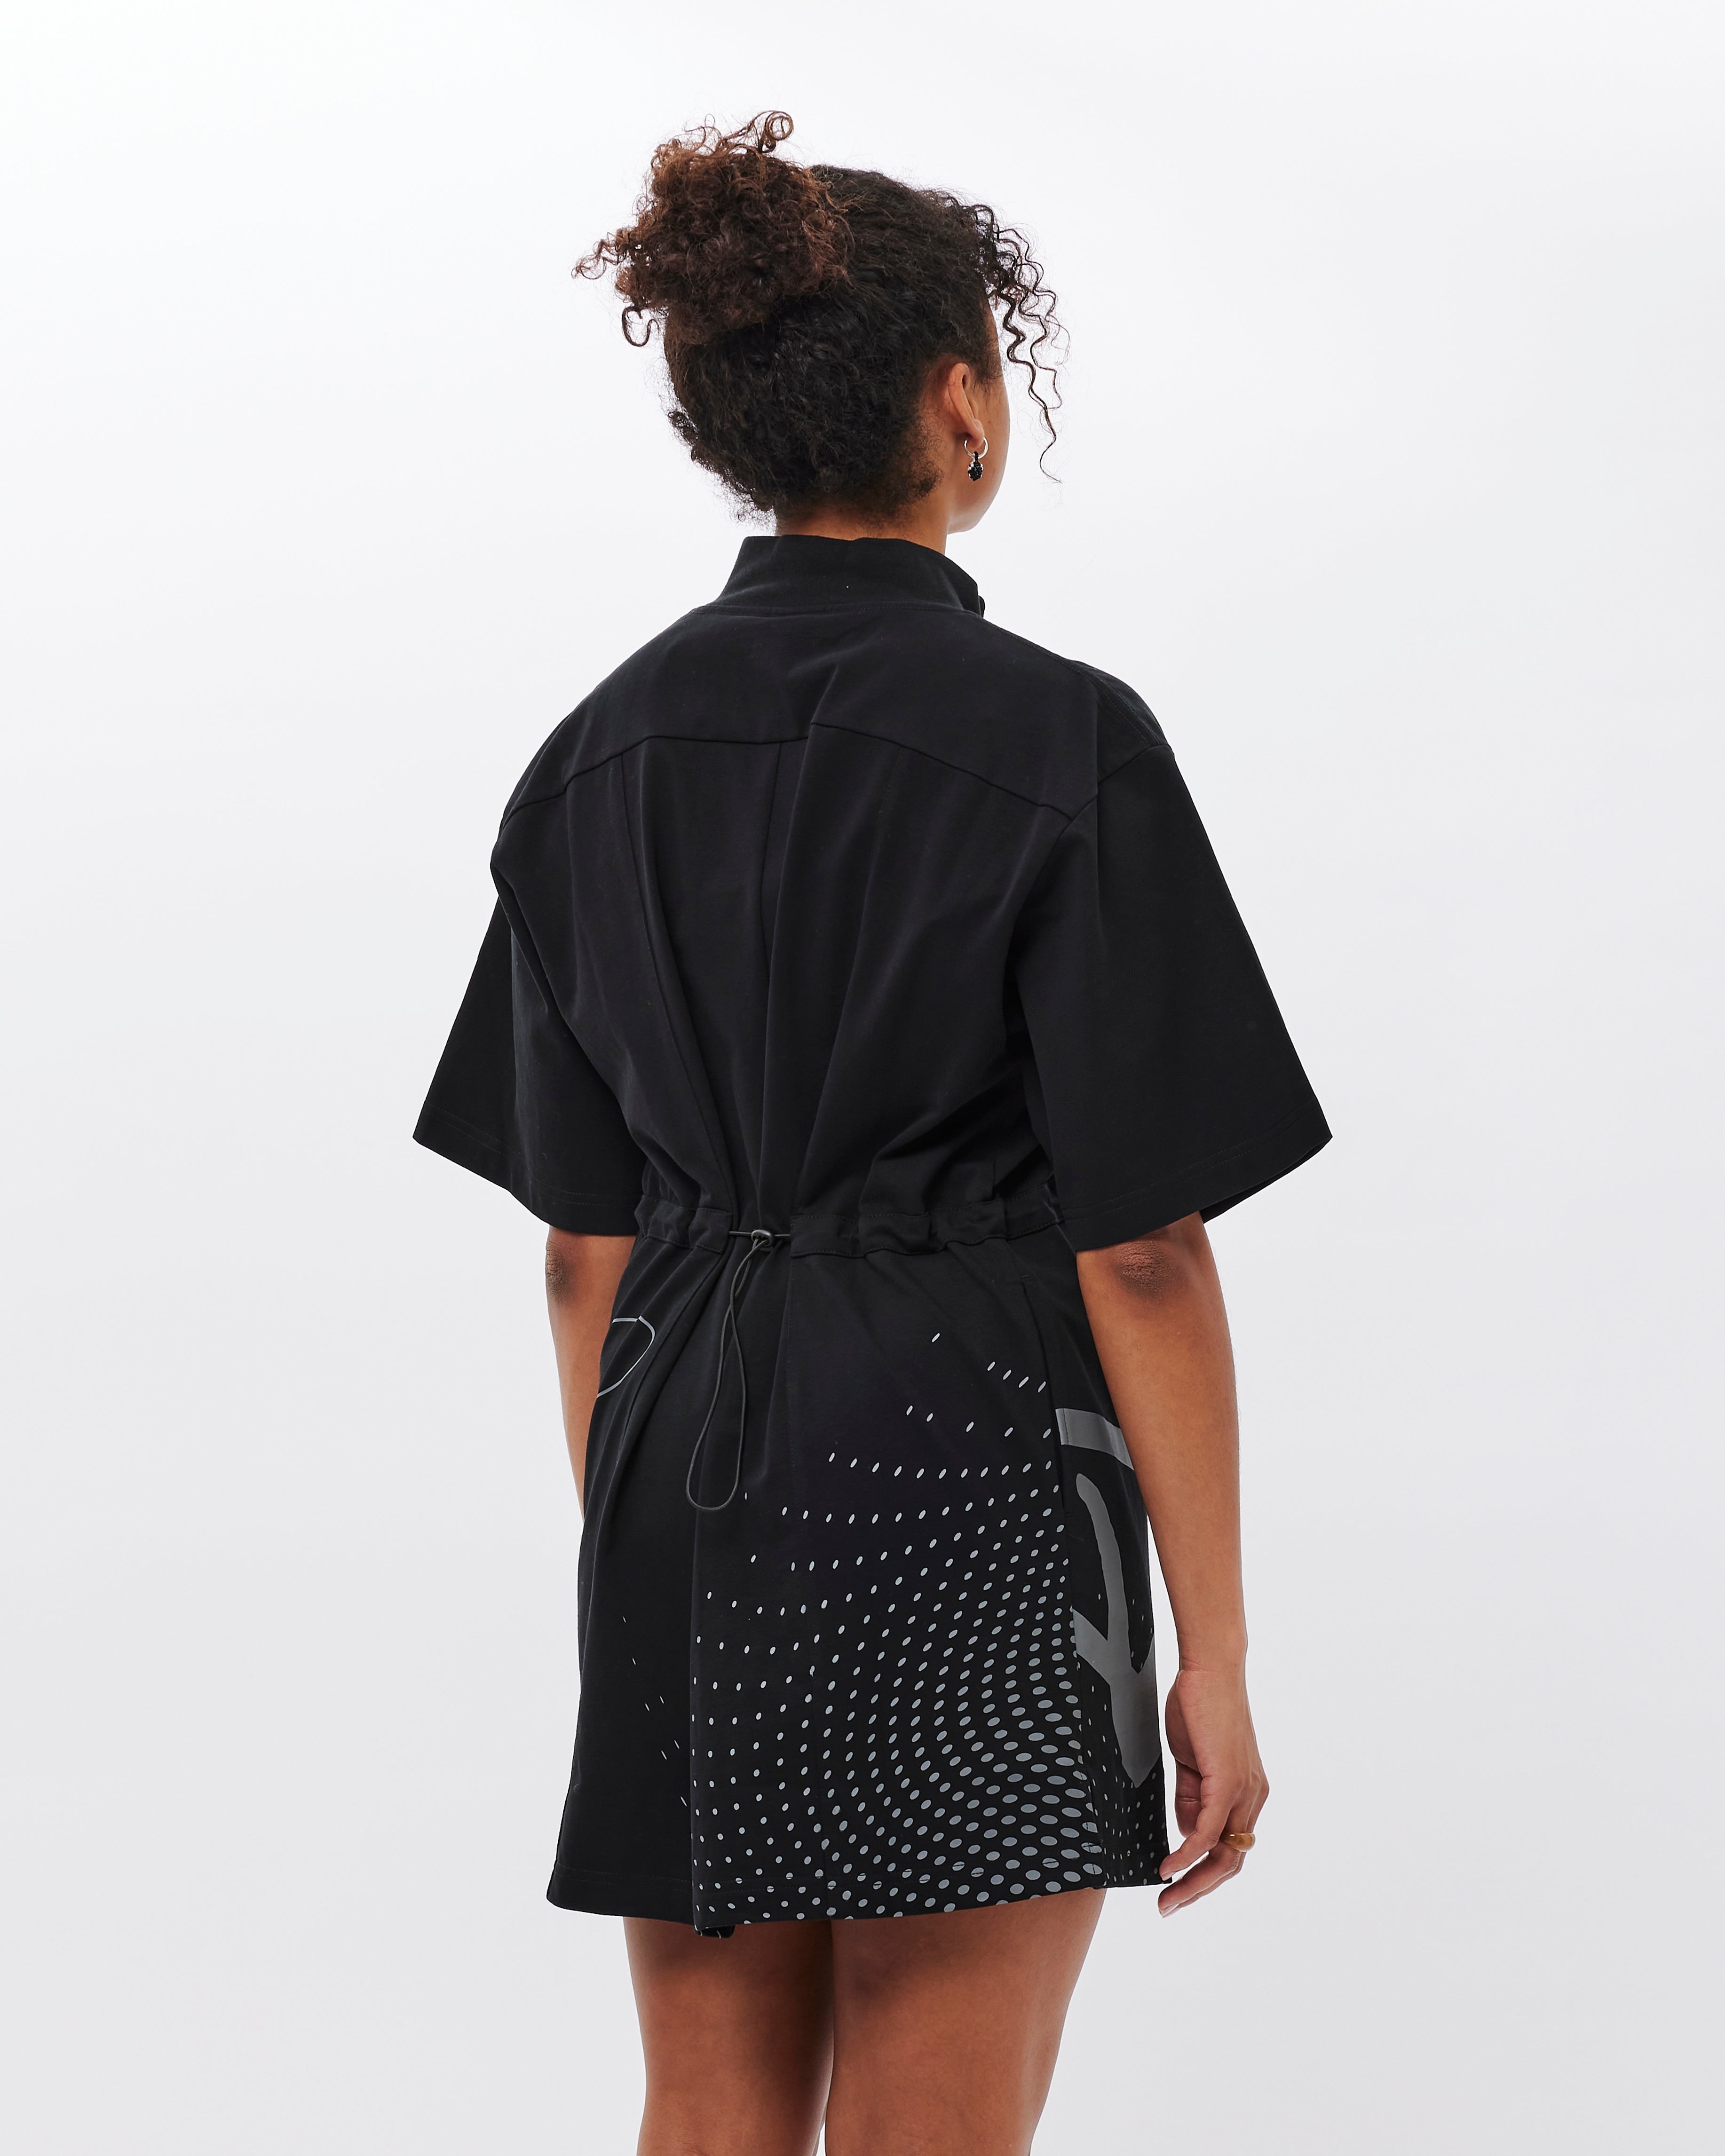 P.A.M Ellipse asymemetrical Zip Dress BLACK 6354-B